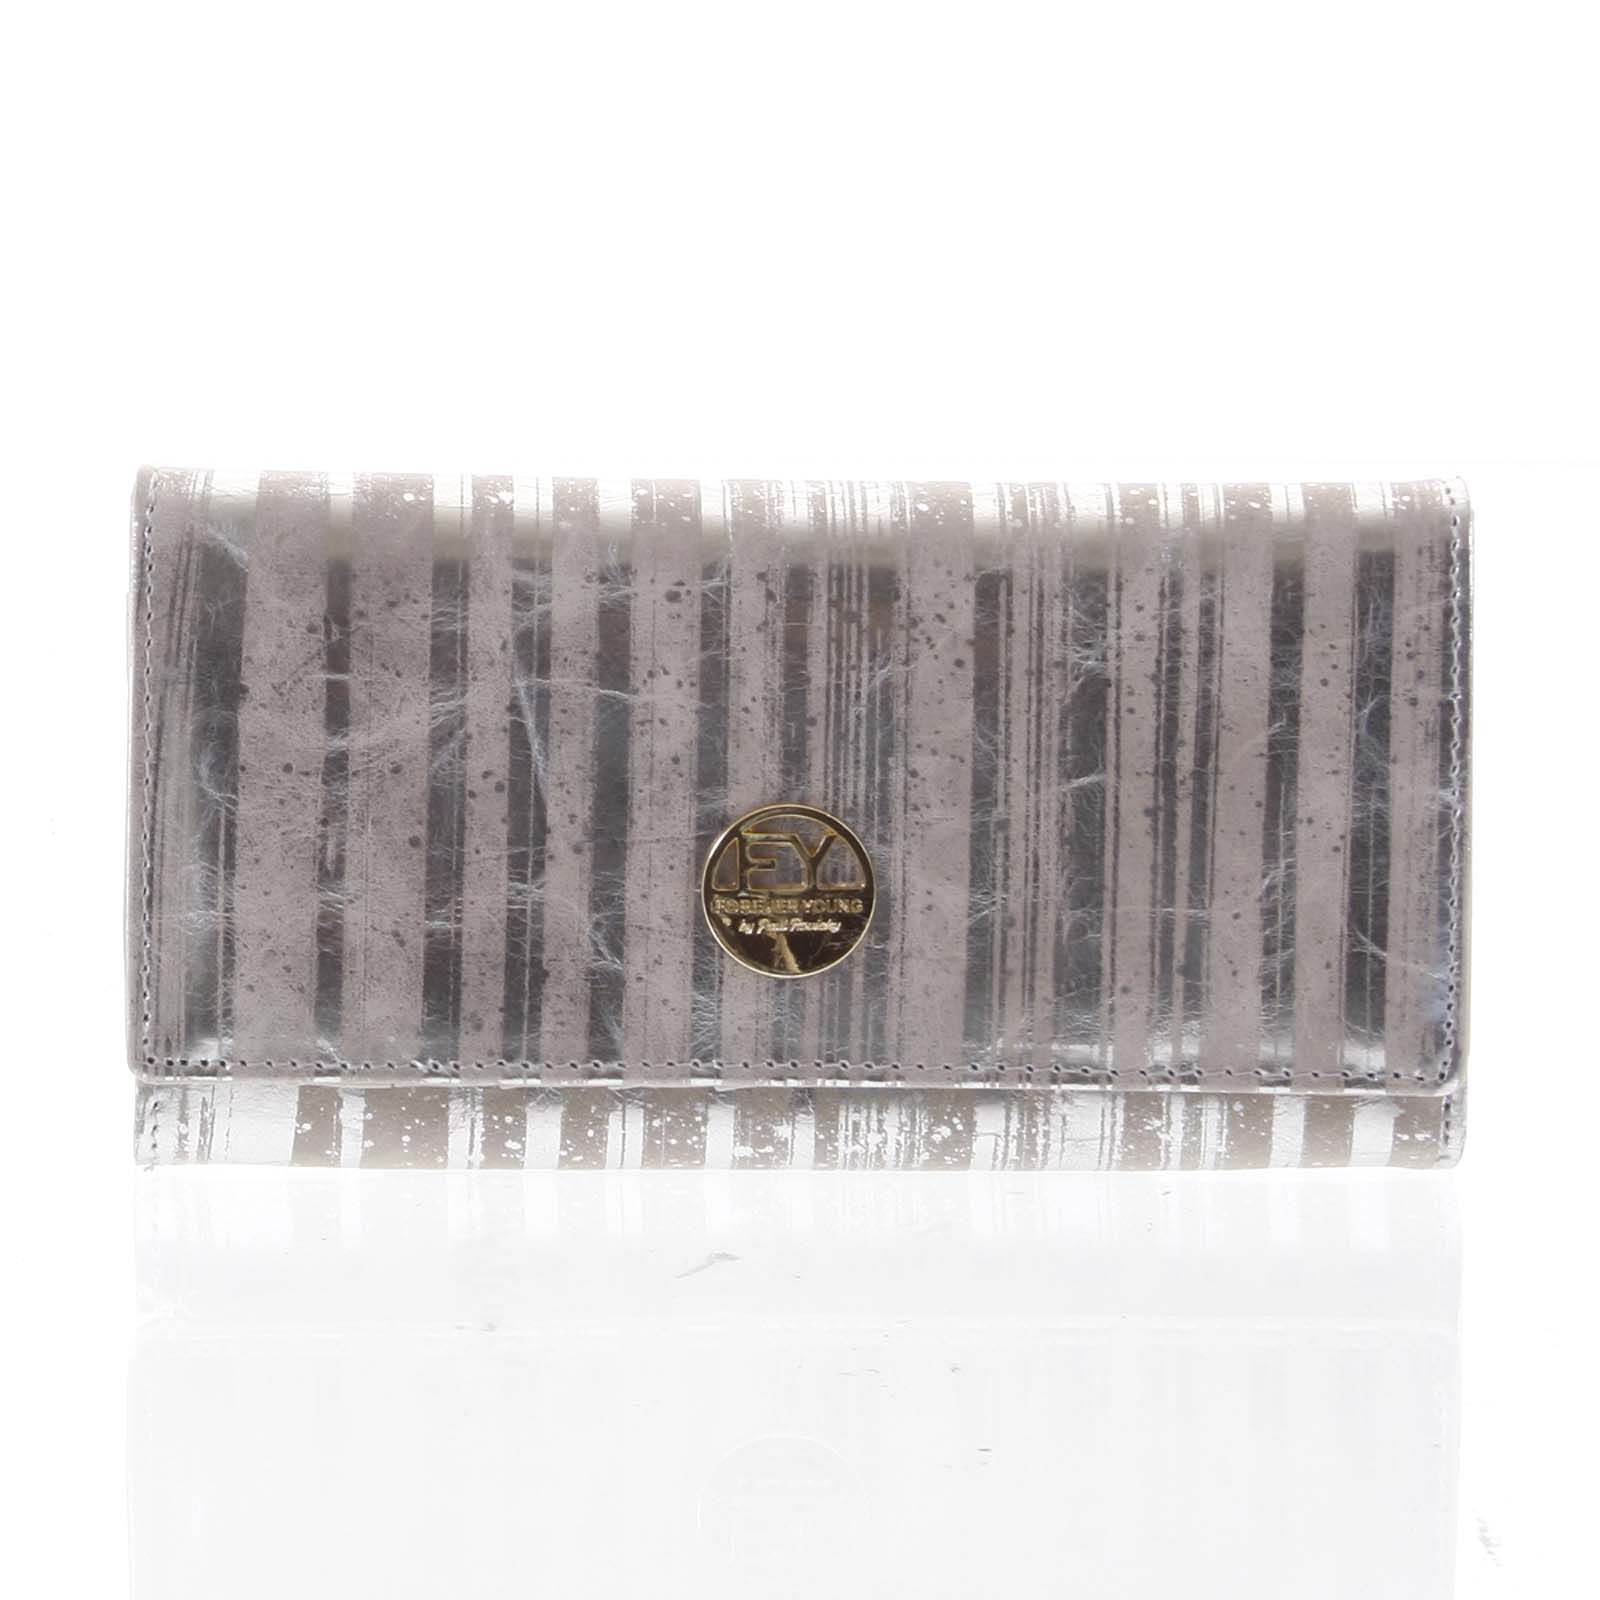 Elegantní dámská kožená peněženka stříbrná - Rovicky 64003 stříbrná